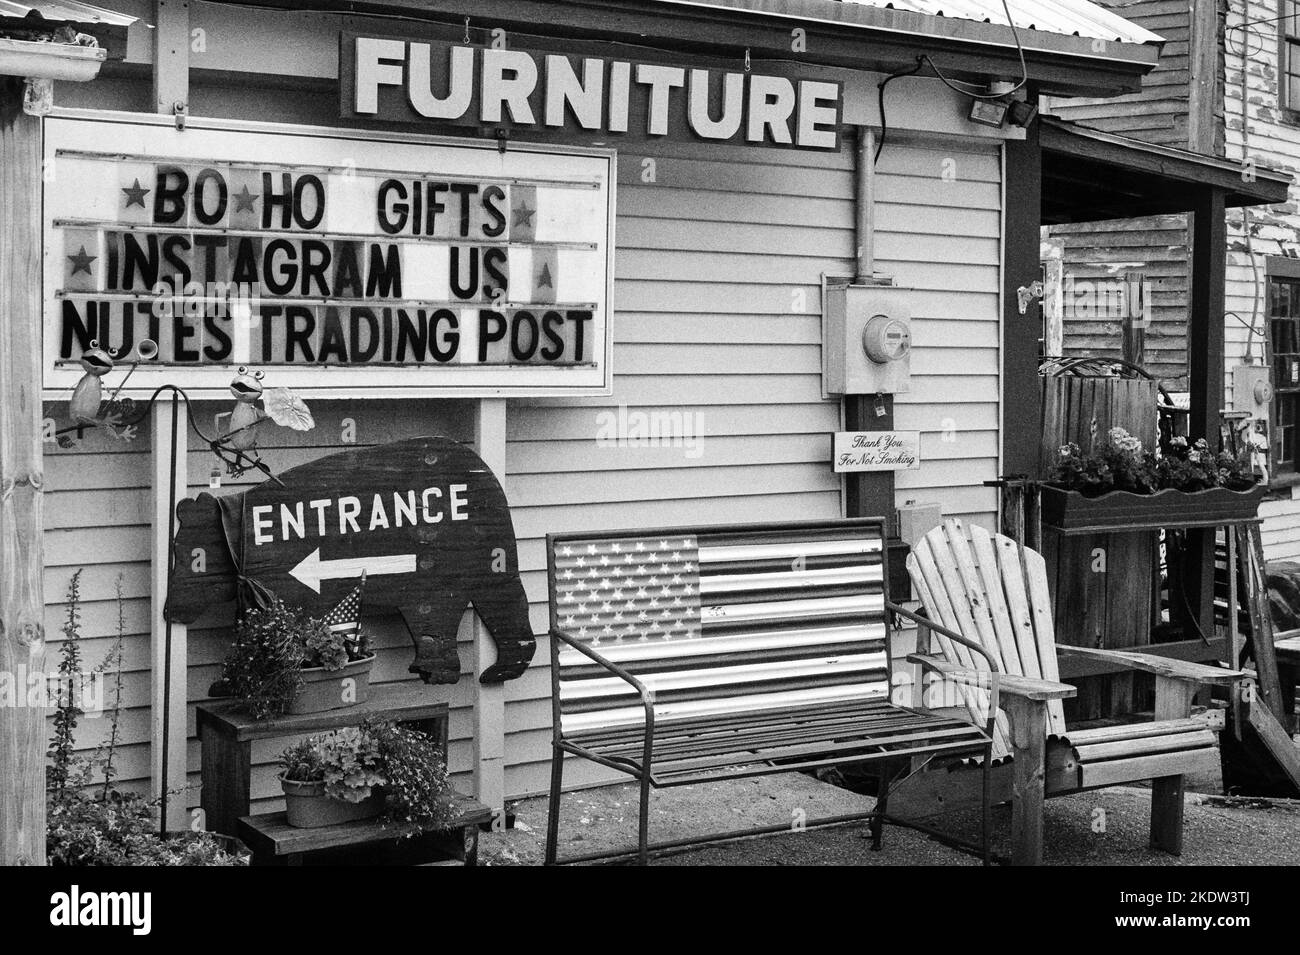 Nutes Trading Post - un classico negozio di articoli da regalo a bordo strada in Union, New Hampshire. L'immagine è stata acquisita su pellicola analogica in bianco e nero. Foto Stock